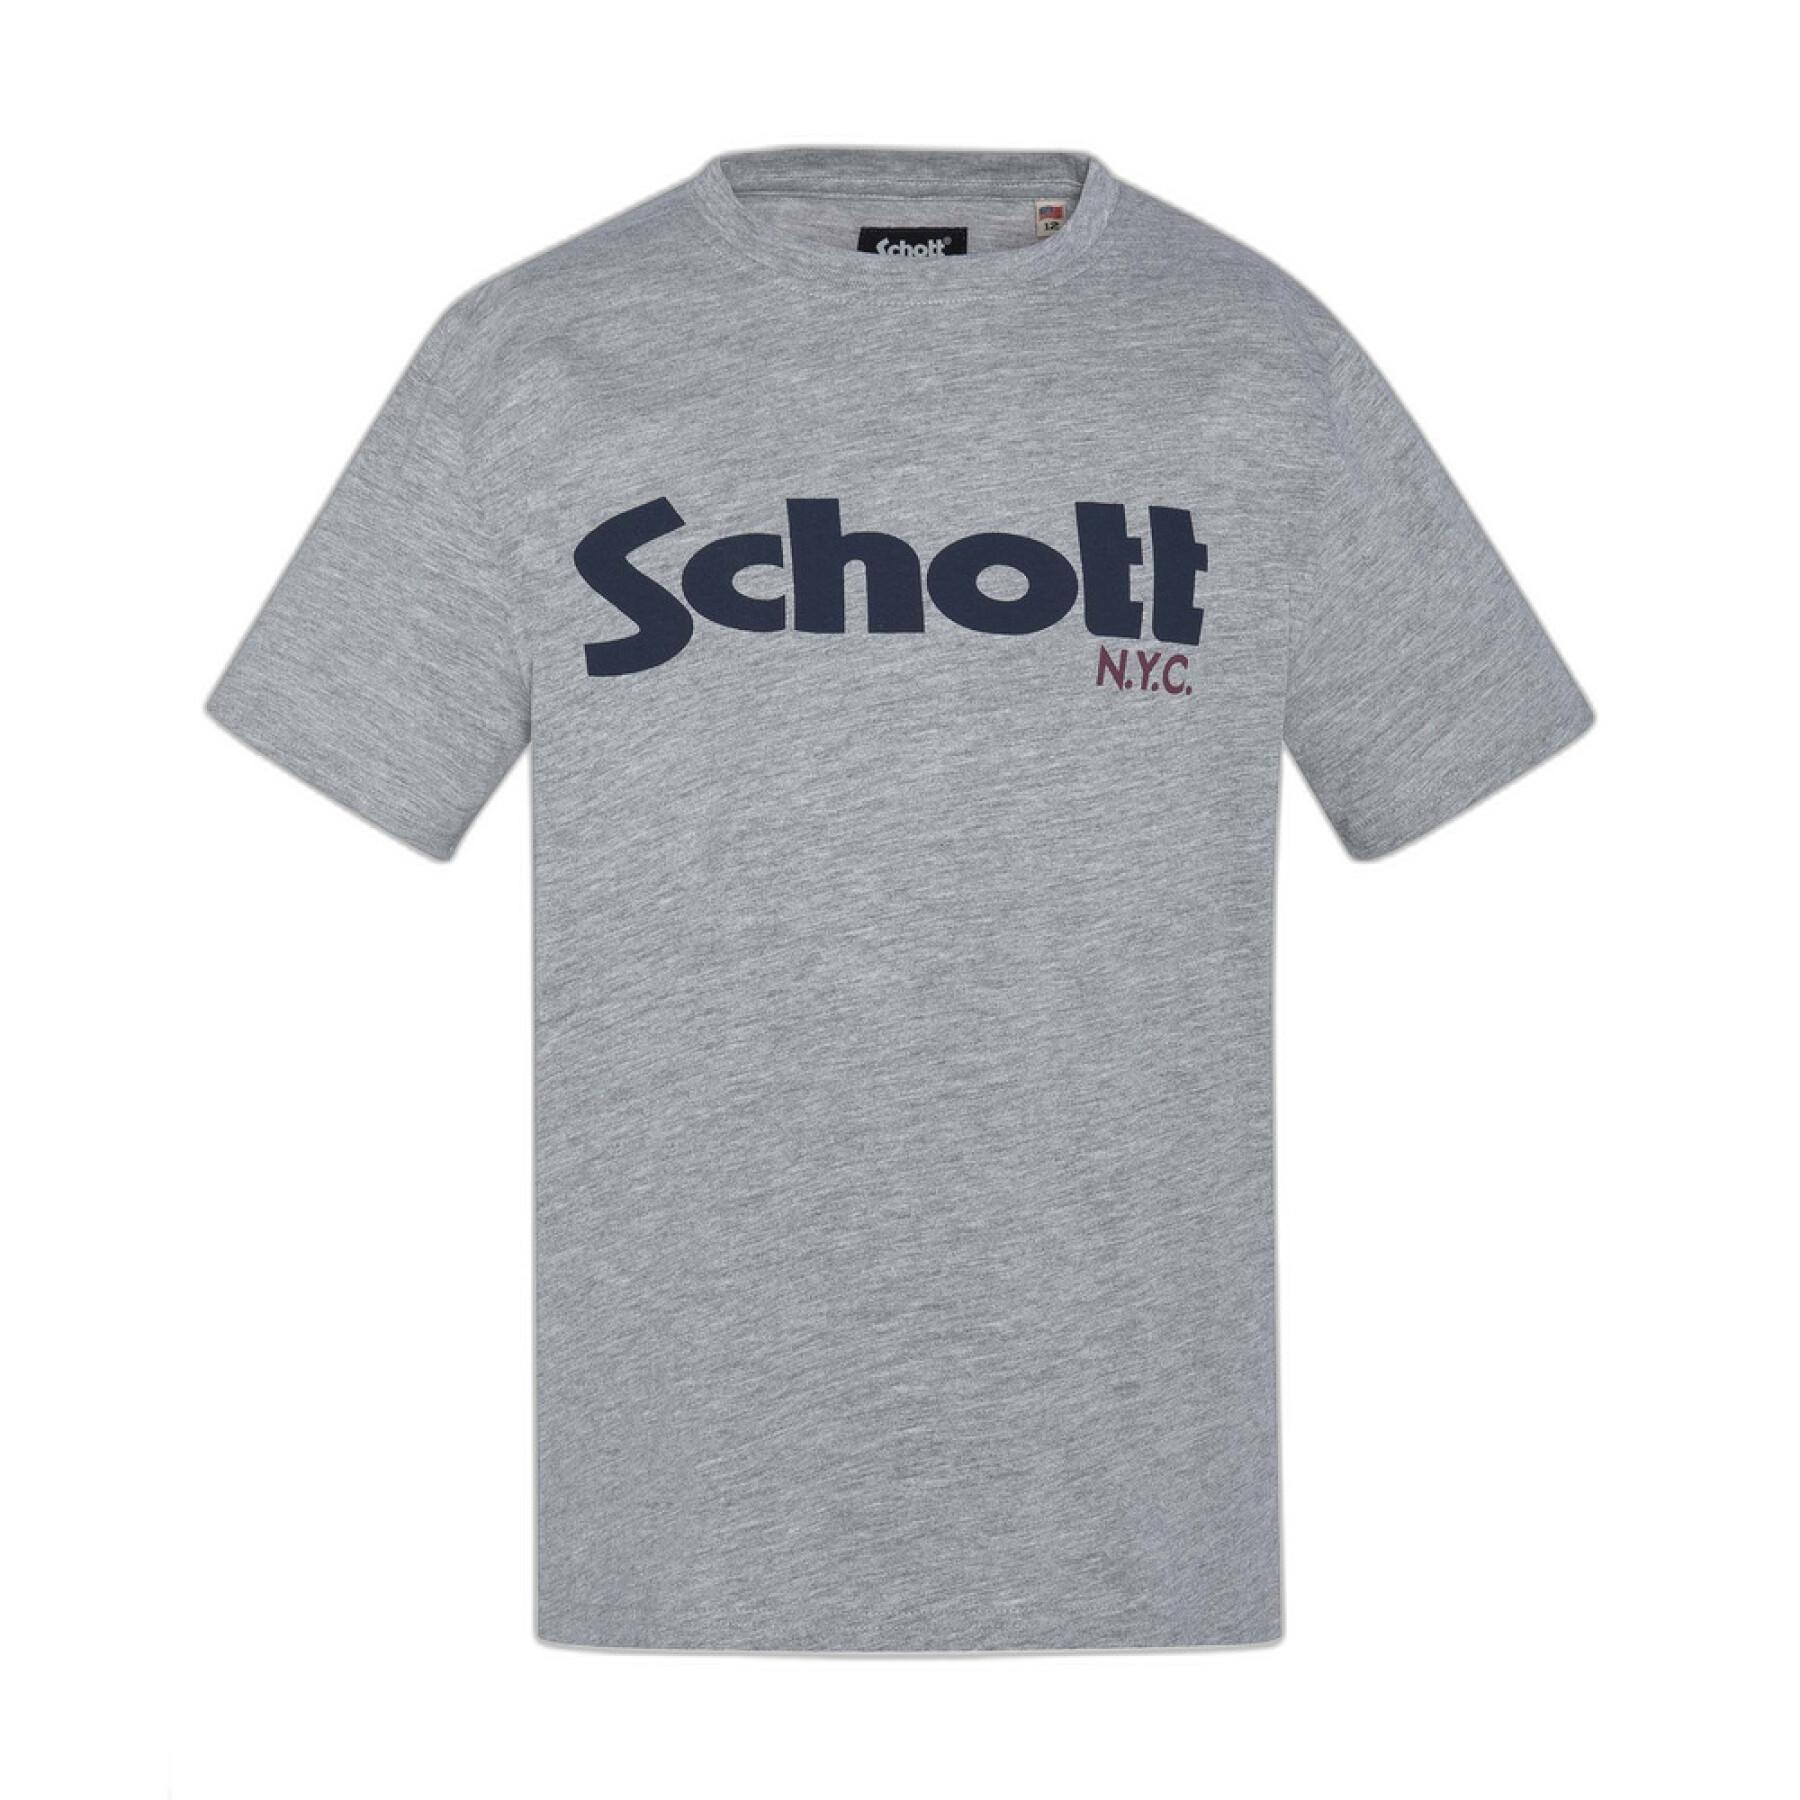 T-shirt com o logotipo da criança Schott